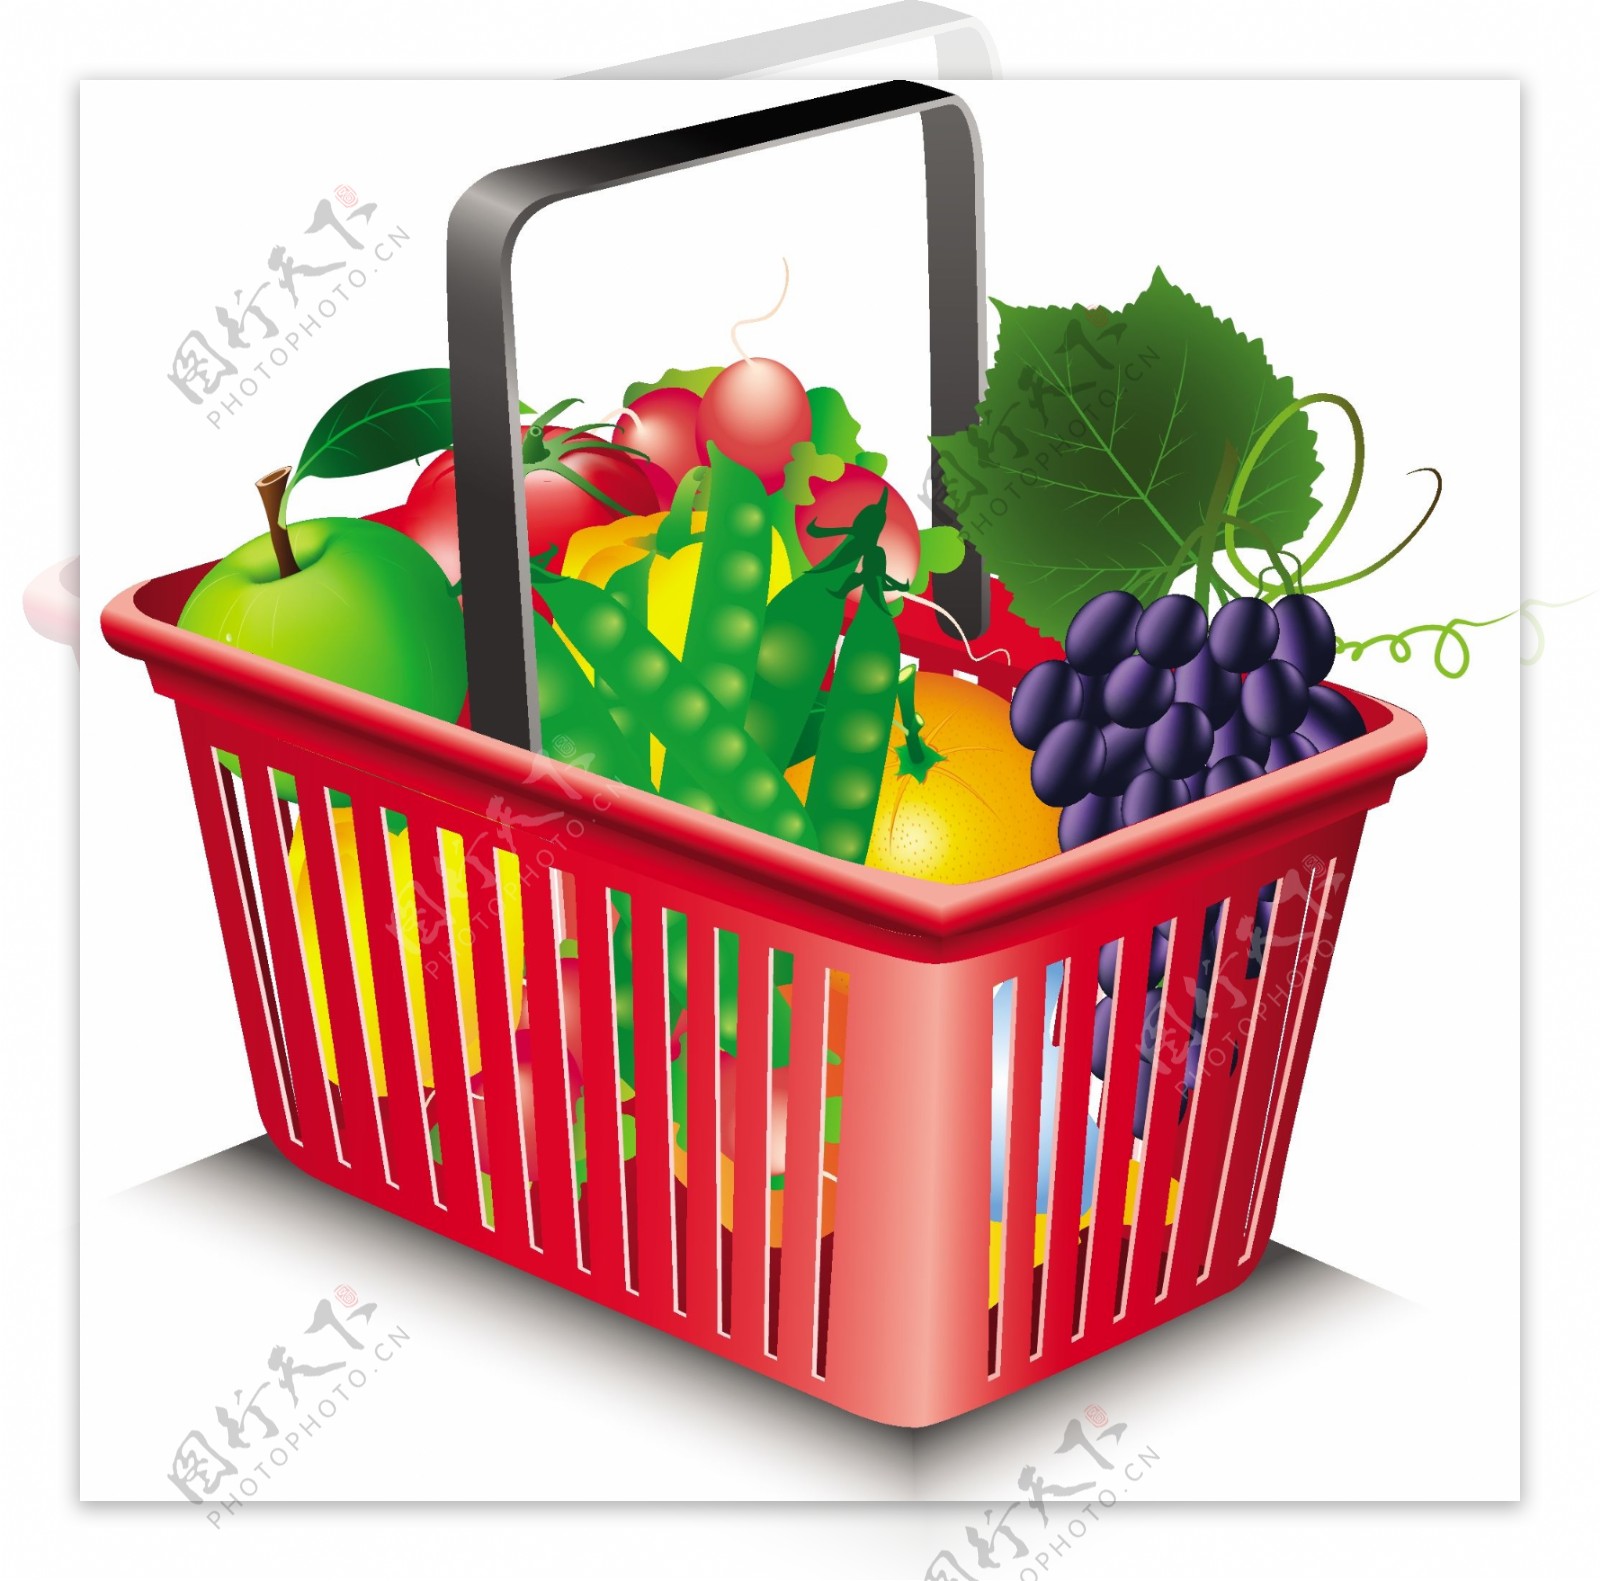 蔬果和购物筐02矢量素材